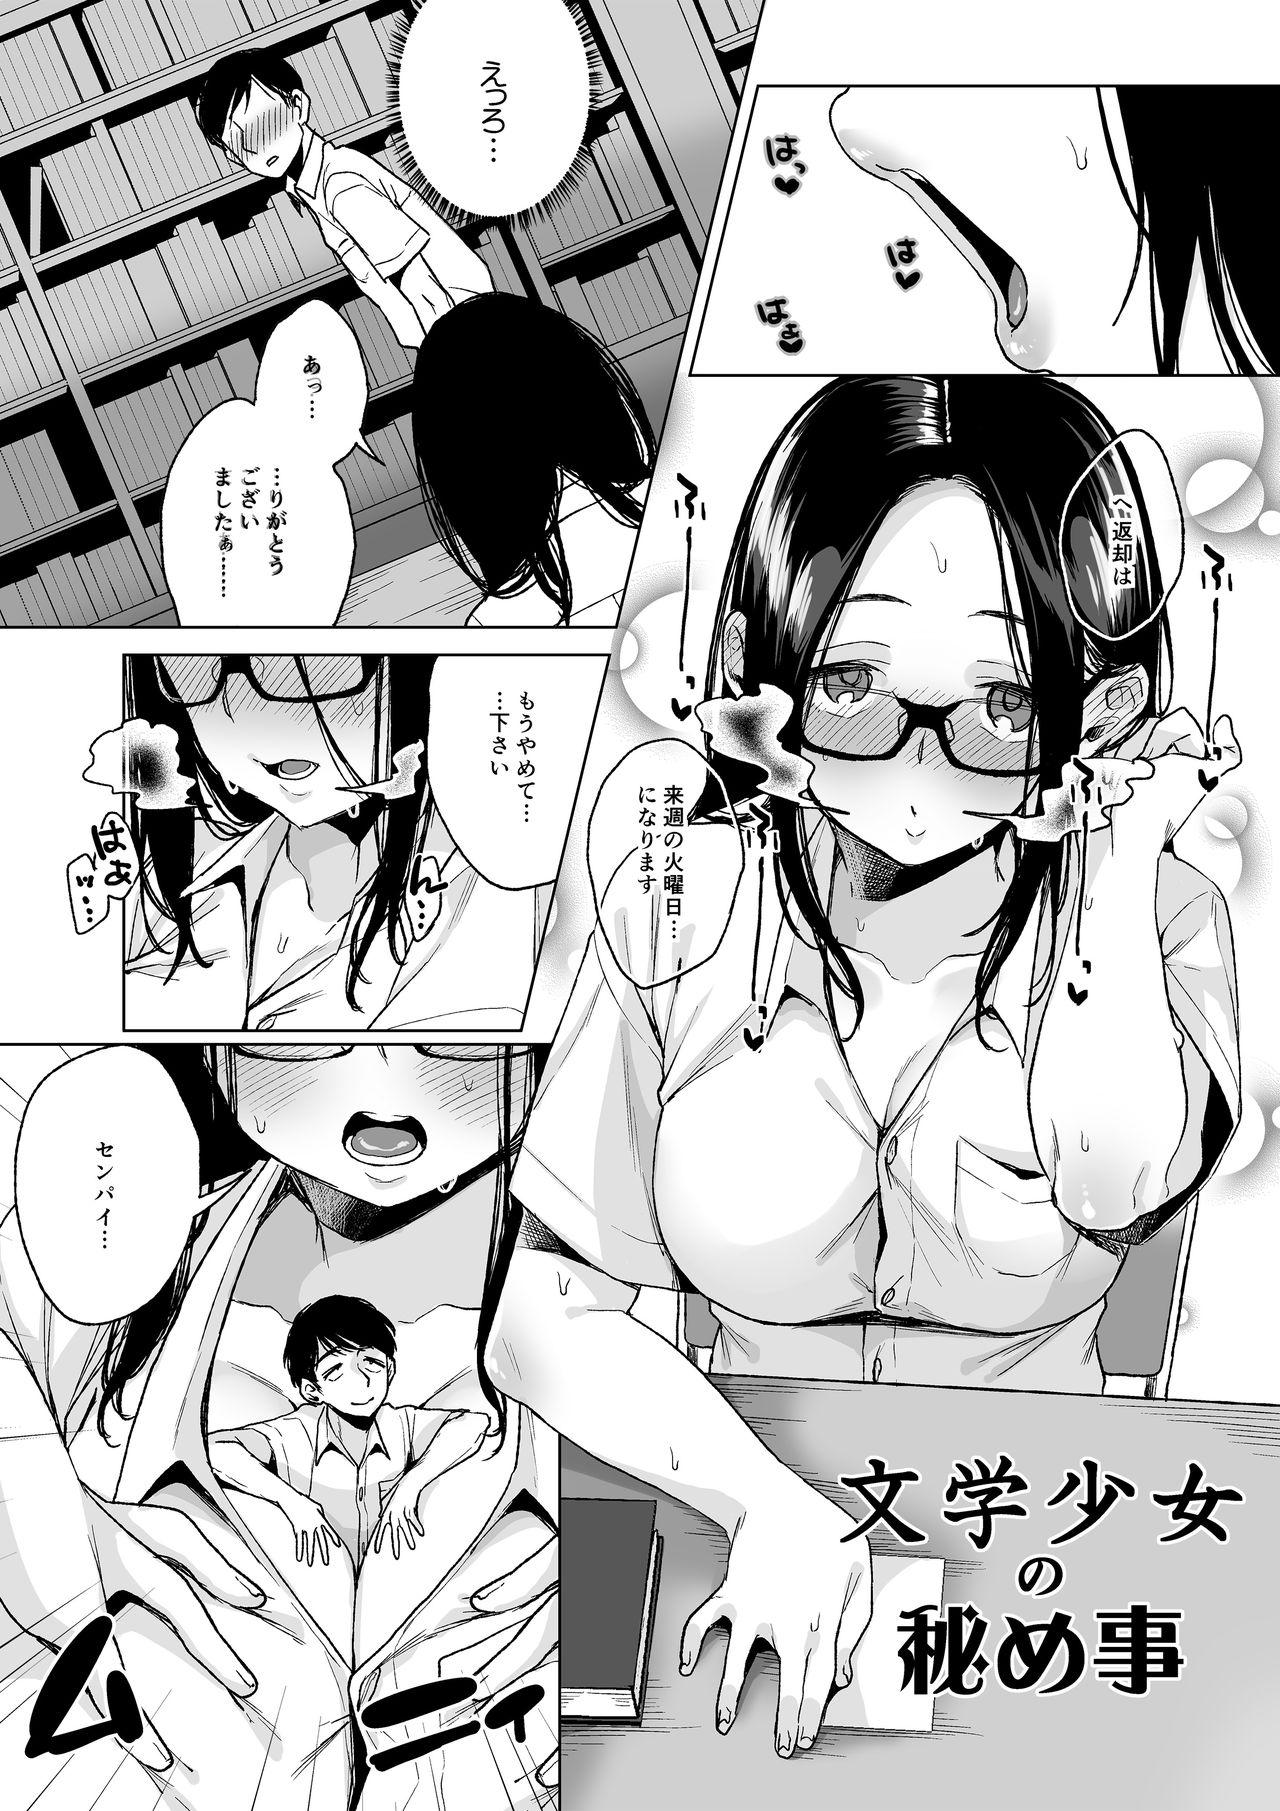 Gayfuck MM Vol. 50 Shumatsu wa Oppai ni Yosete♥ Gay Pawn - Page 6